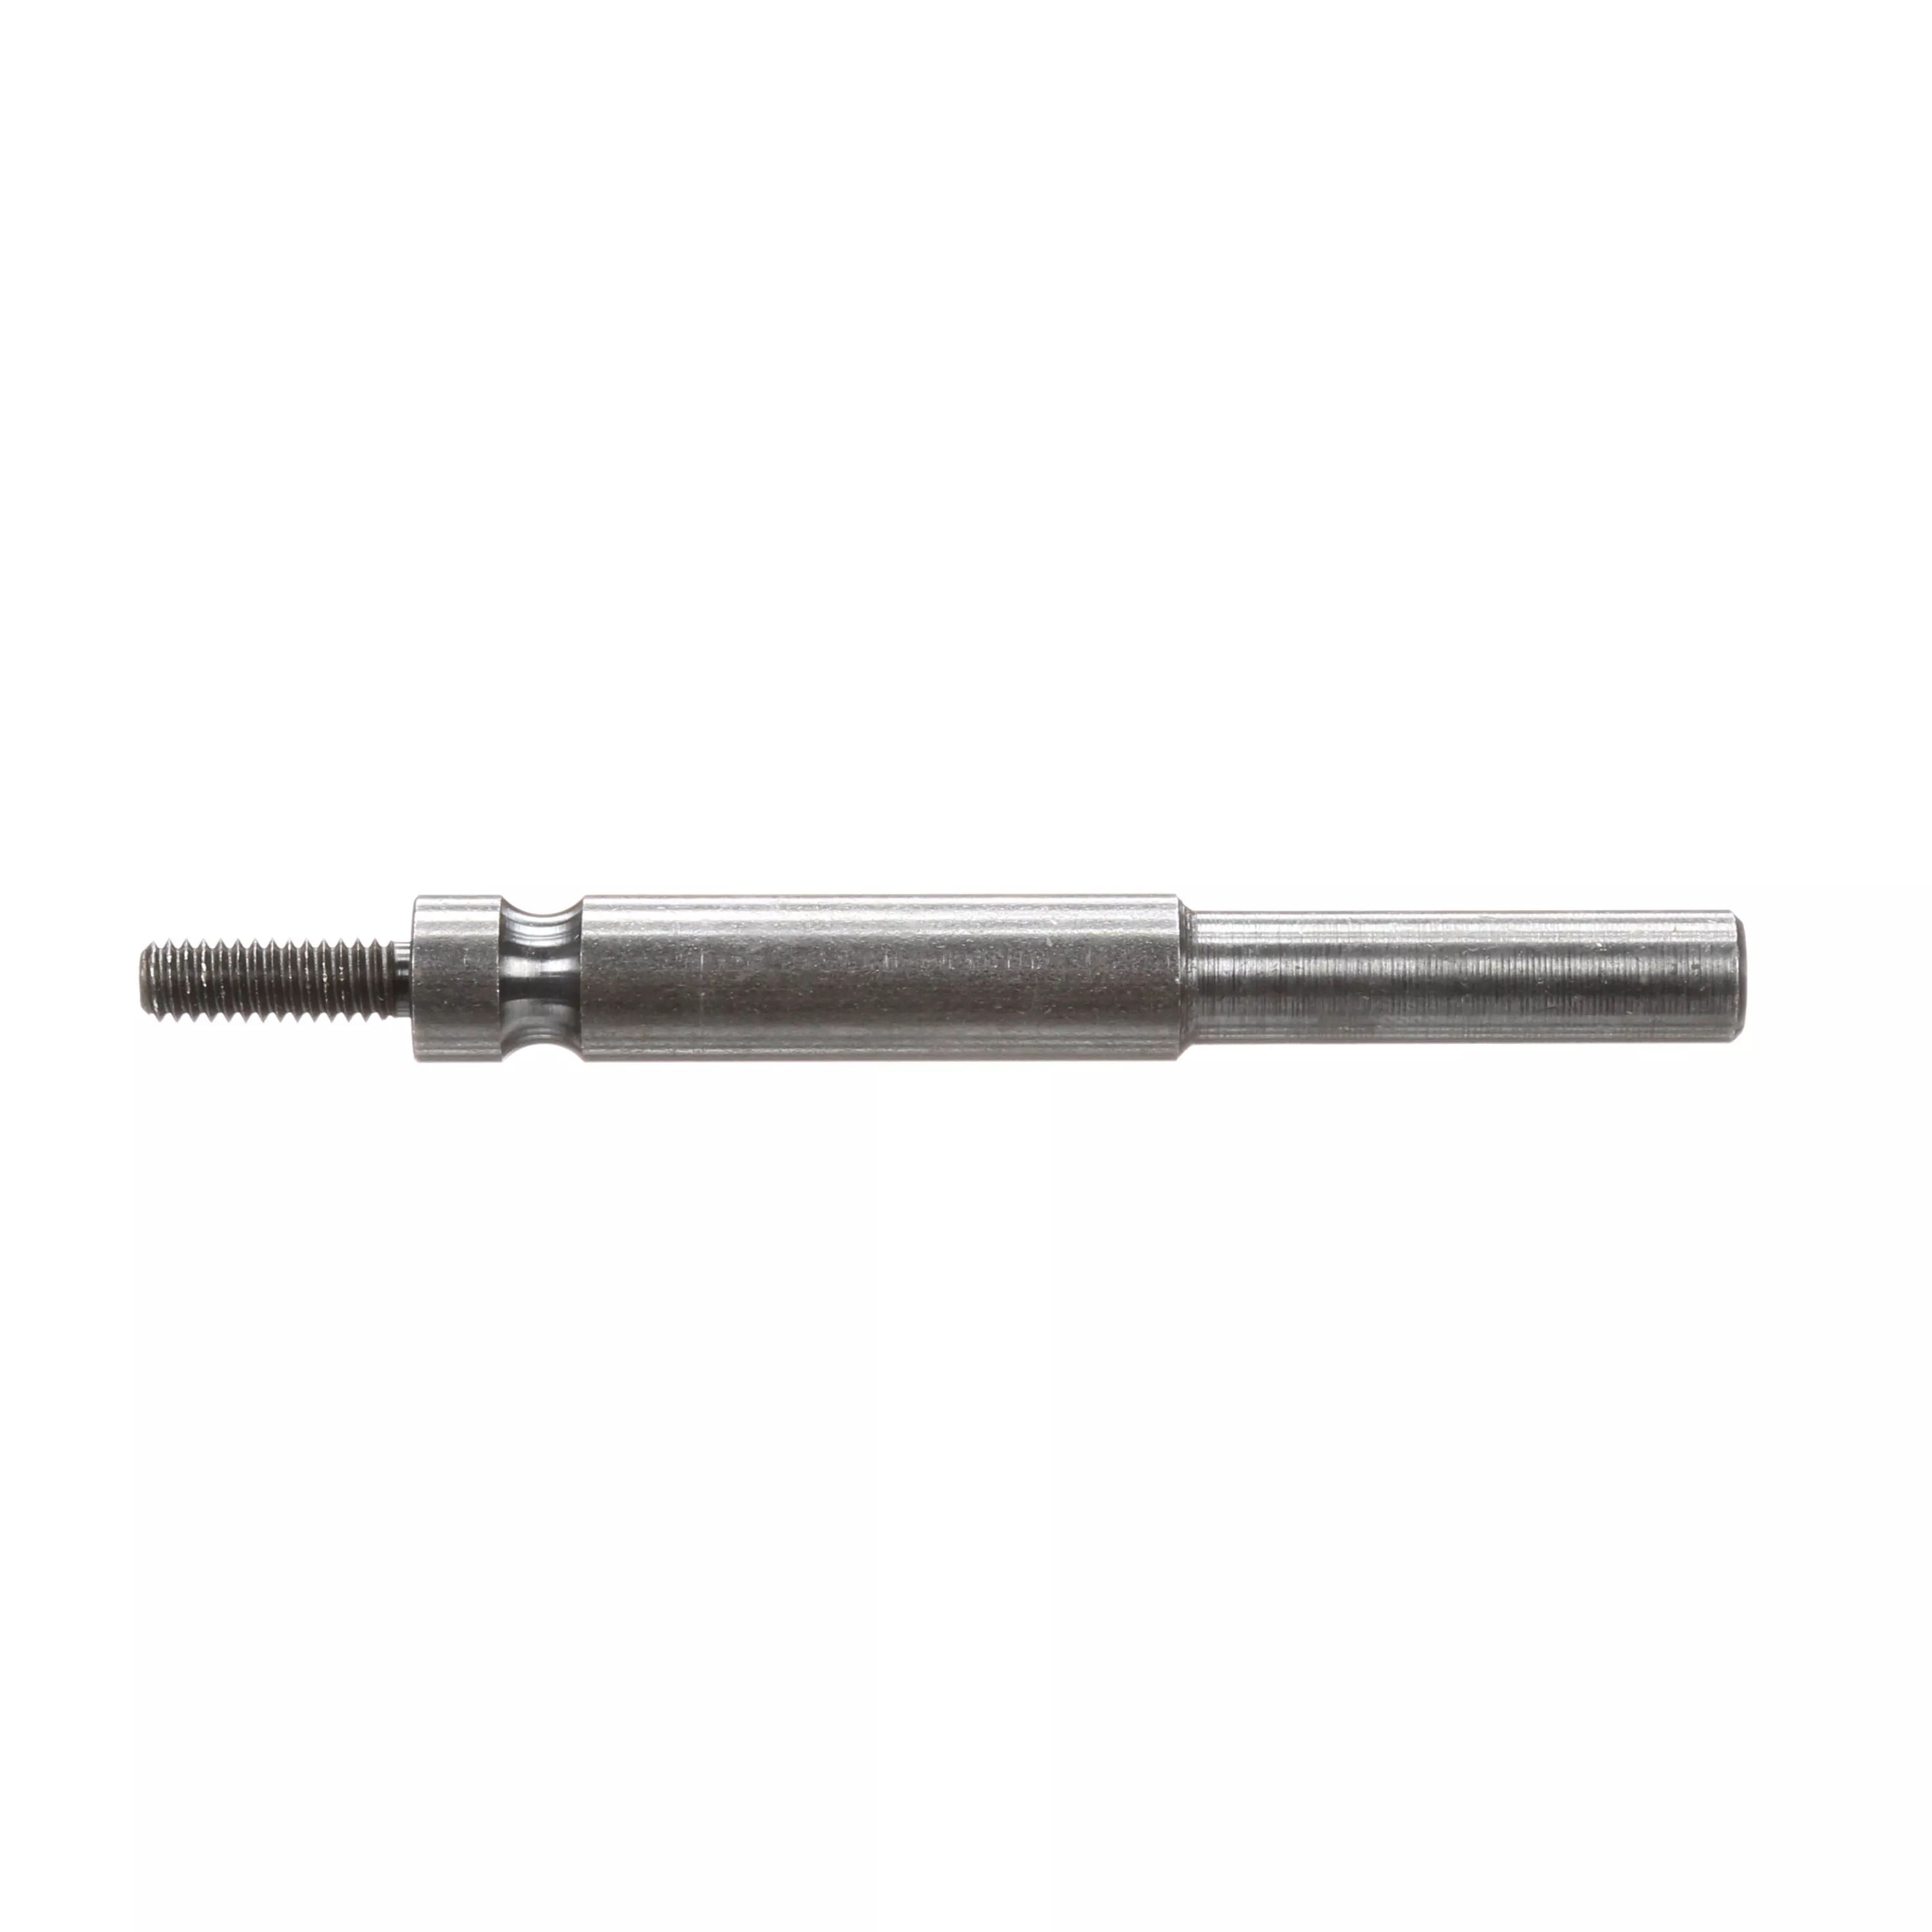 Standard Abrasives™ Mandrel, 700143, 3 in x1/4 in x 8-32 TM-3, 5/Carton,
100 ea/Case